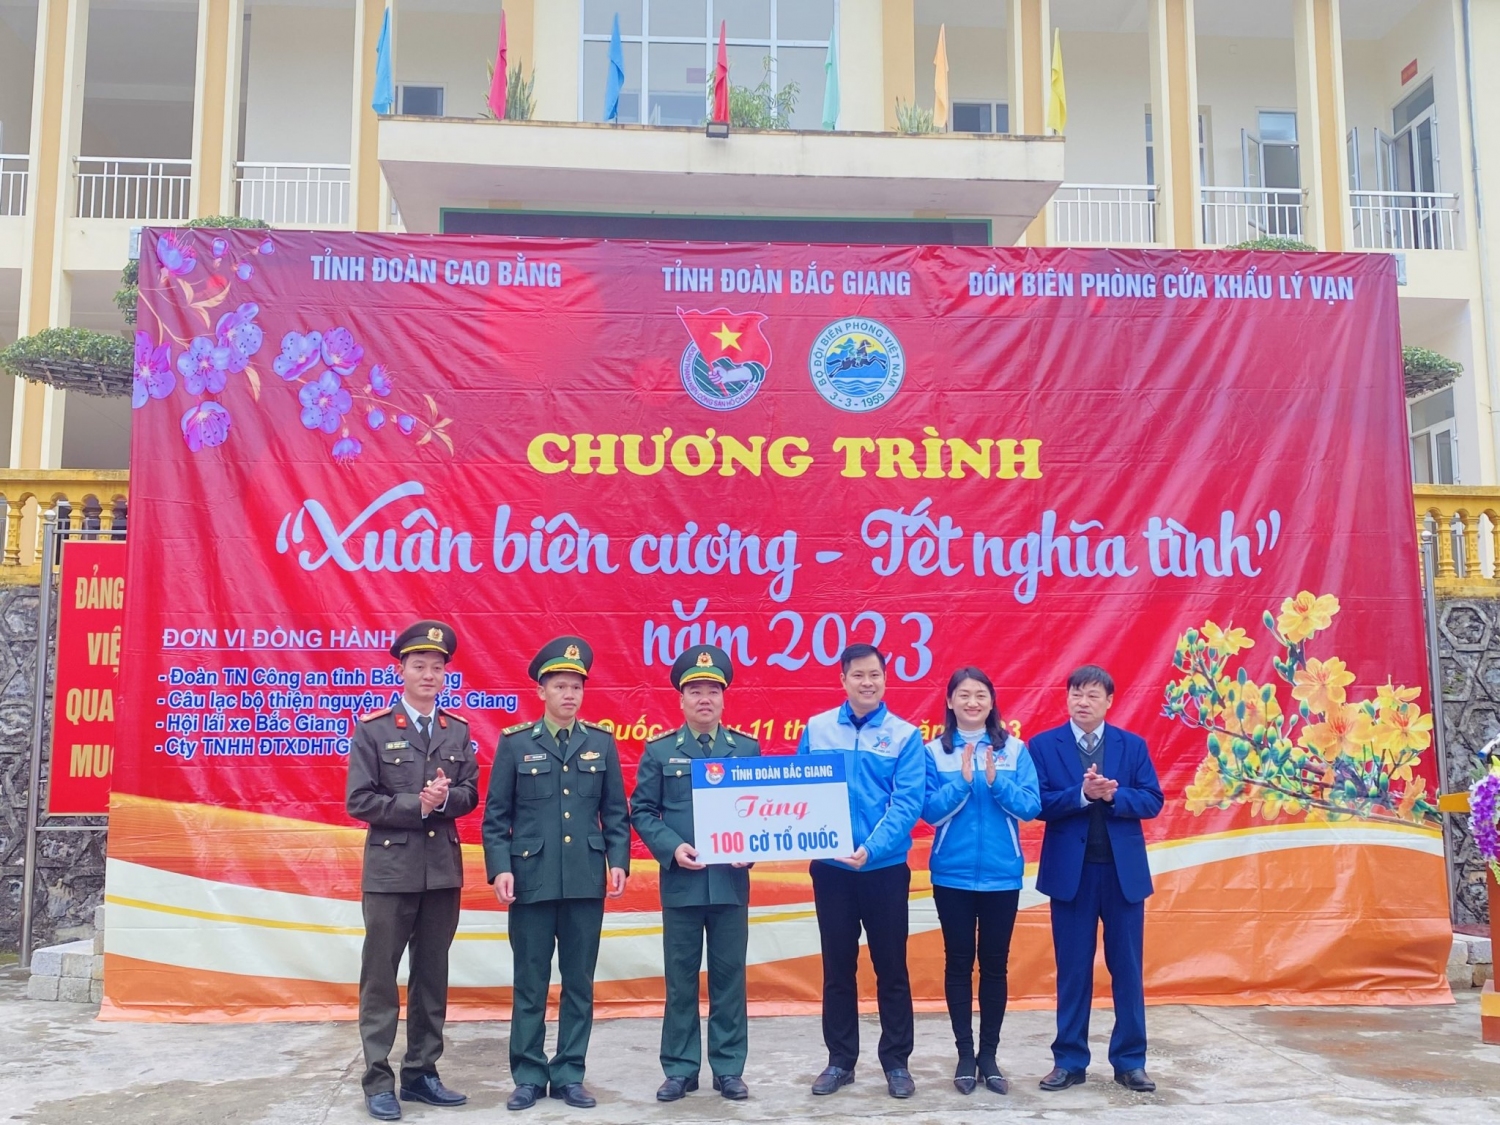 Đoàn công tác trao tặng 100 lá cờ Tổ quốc cho cán bộ, chiến sĩ Đồn Biên phòng Cửa khẩu Lý Vạn, huyện Hạ Lang